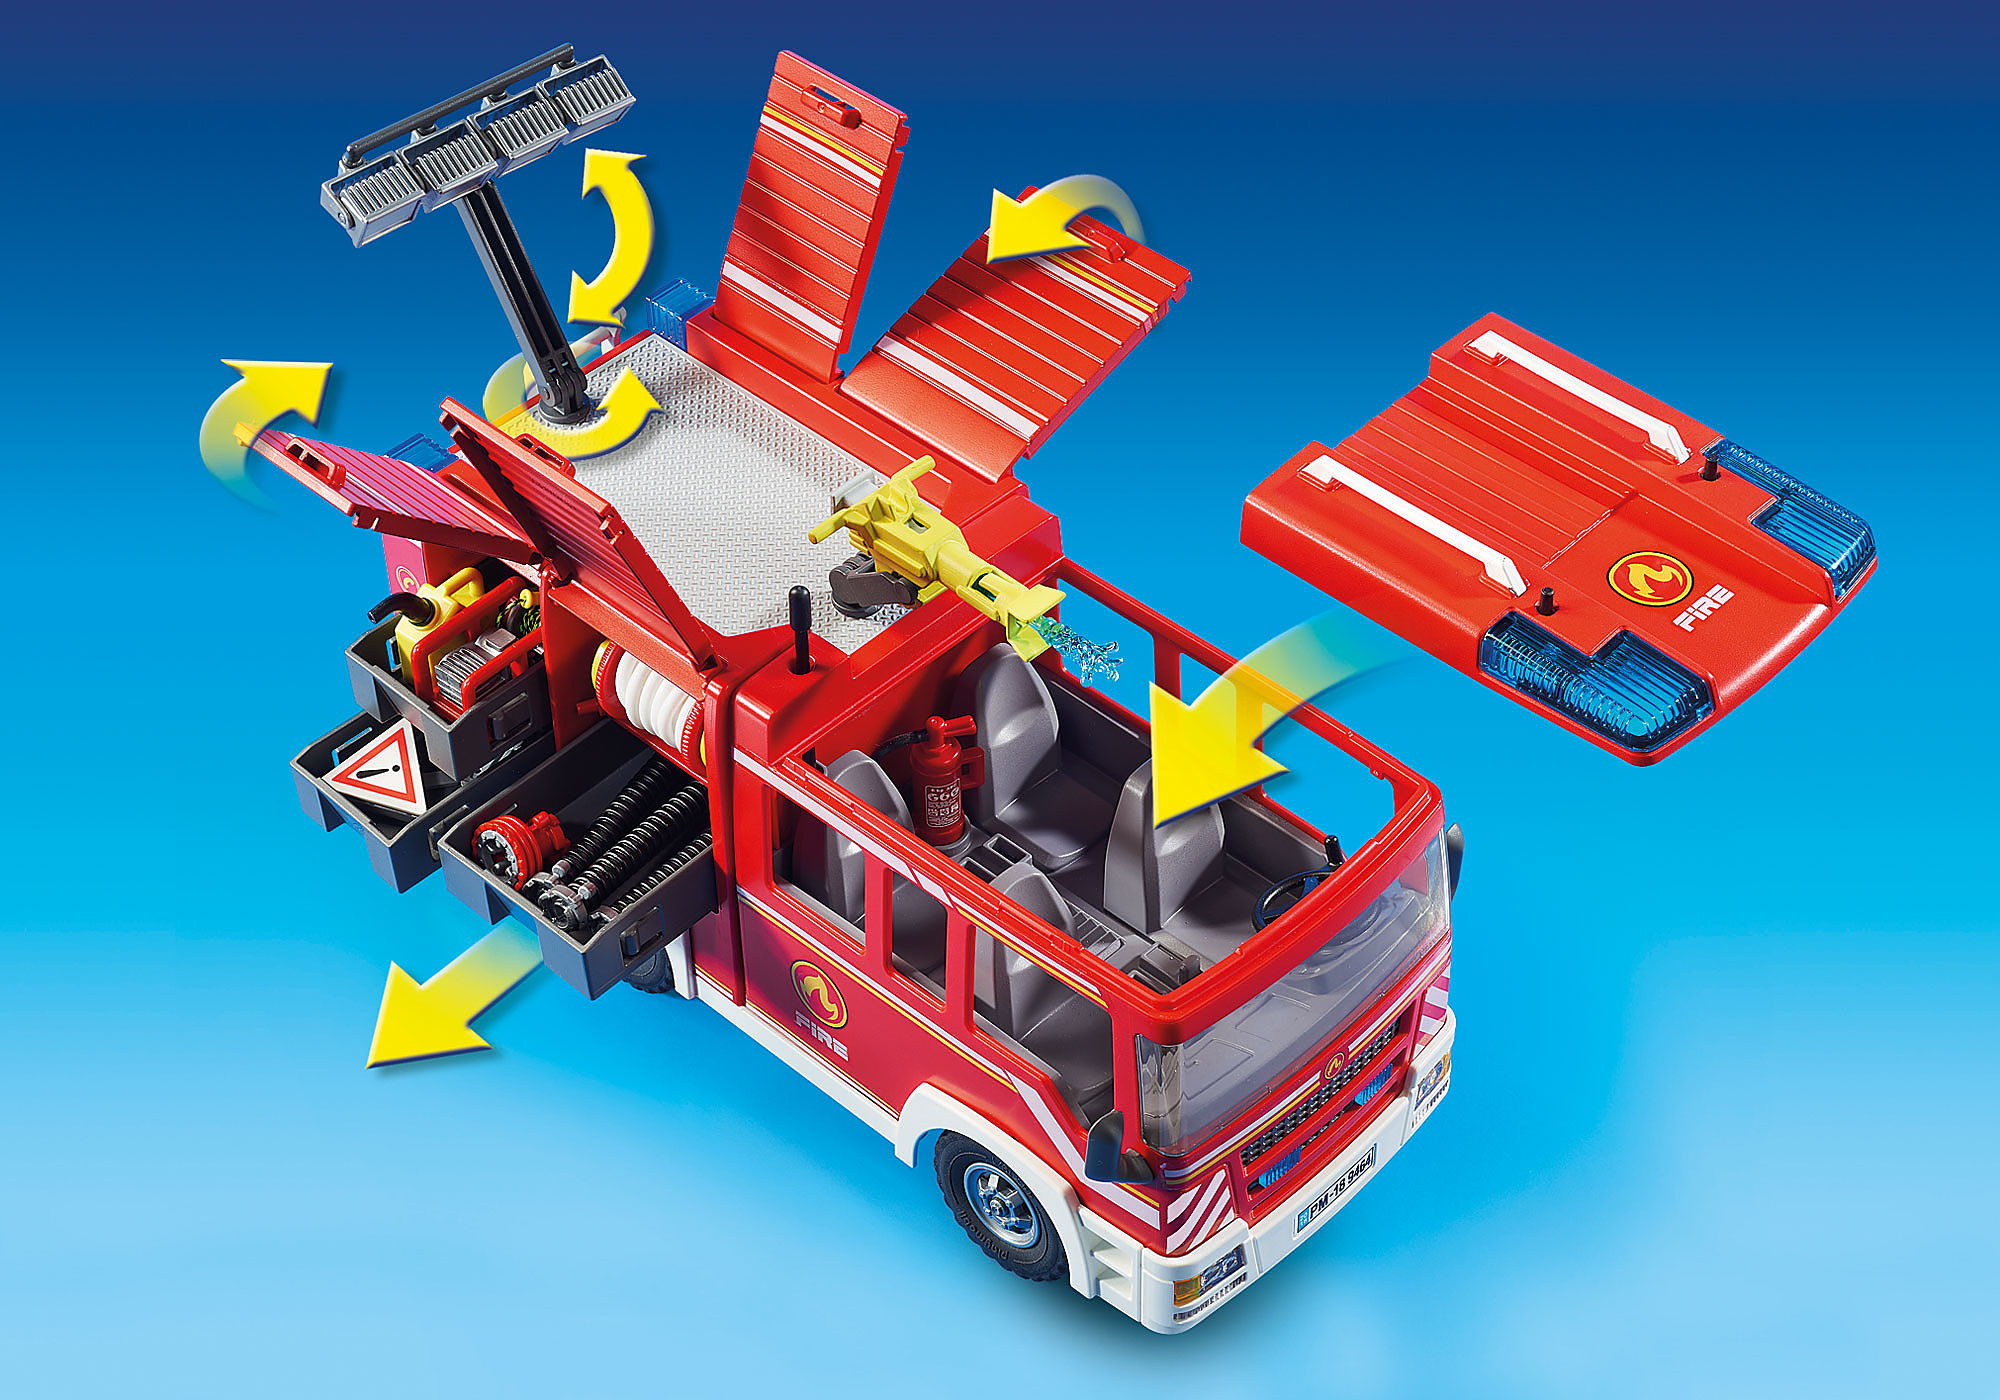 camion pompiers - 3525-B  Play mobile, Camion pompier, Jouet playmobil